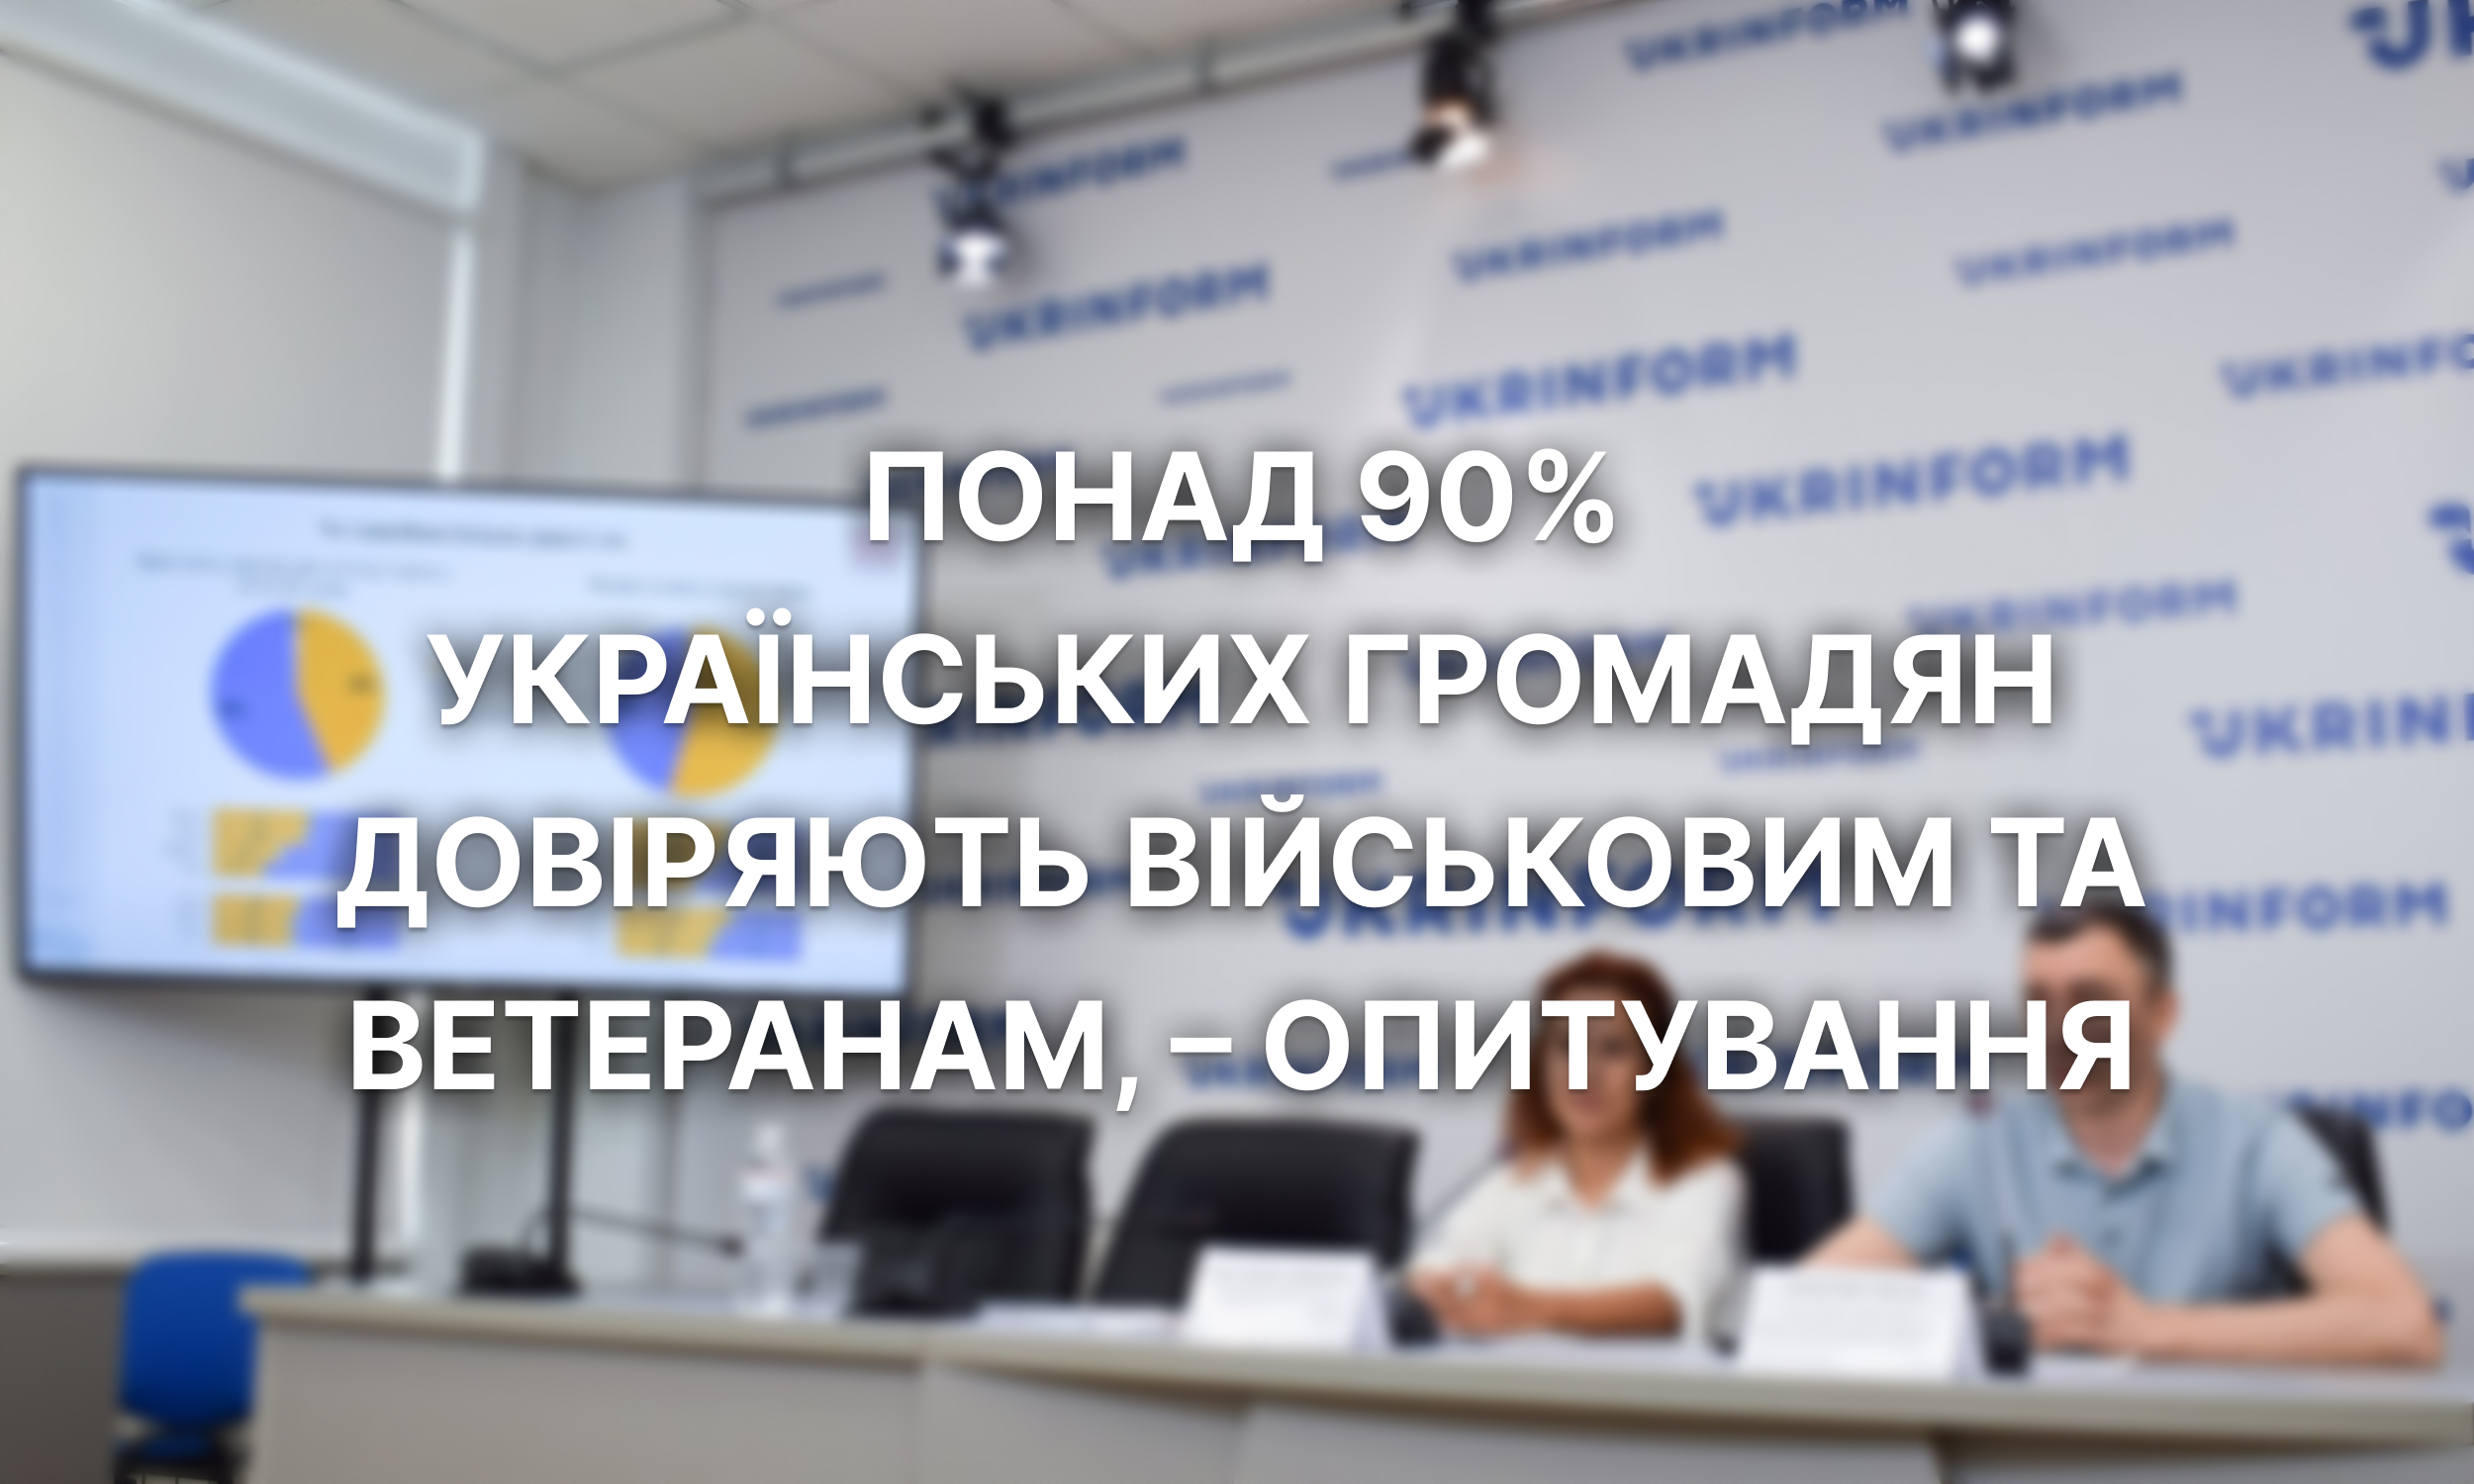 Понад 90% українських громадян довіряють військовим та ветеранам, – опитування